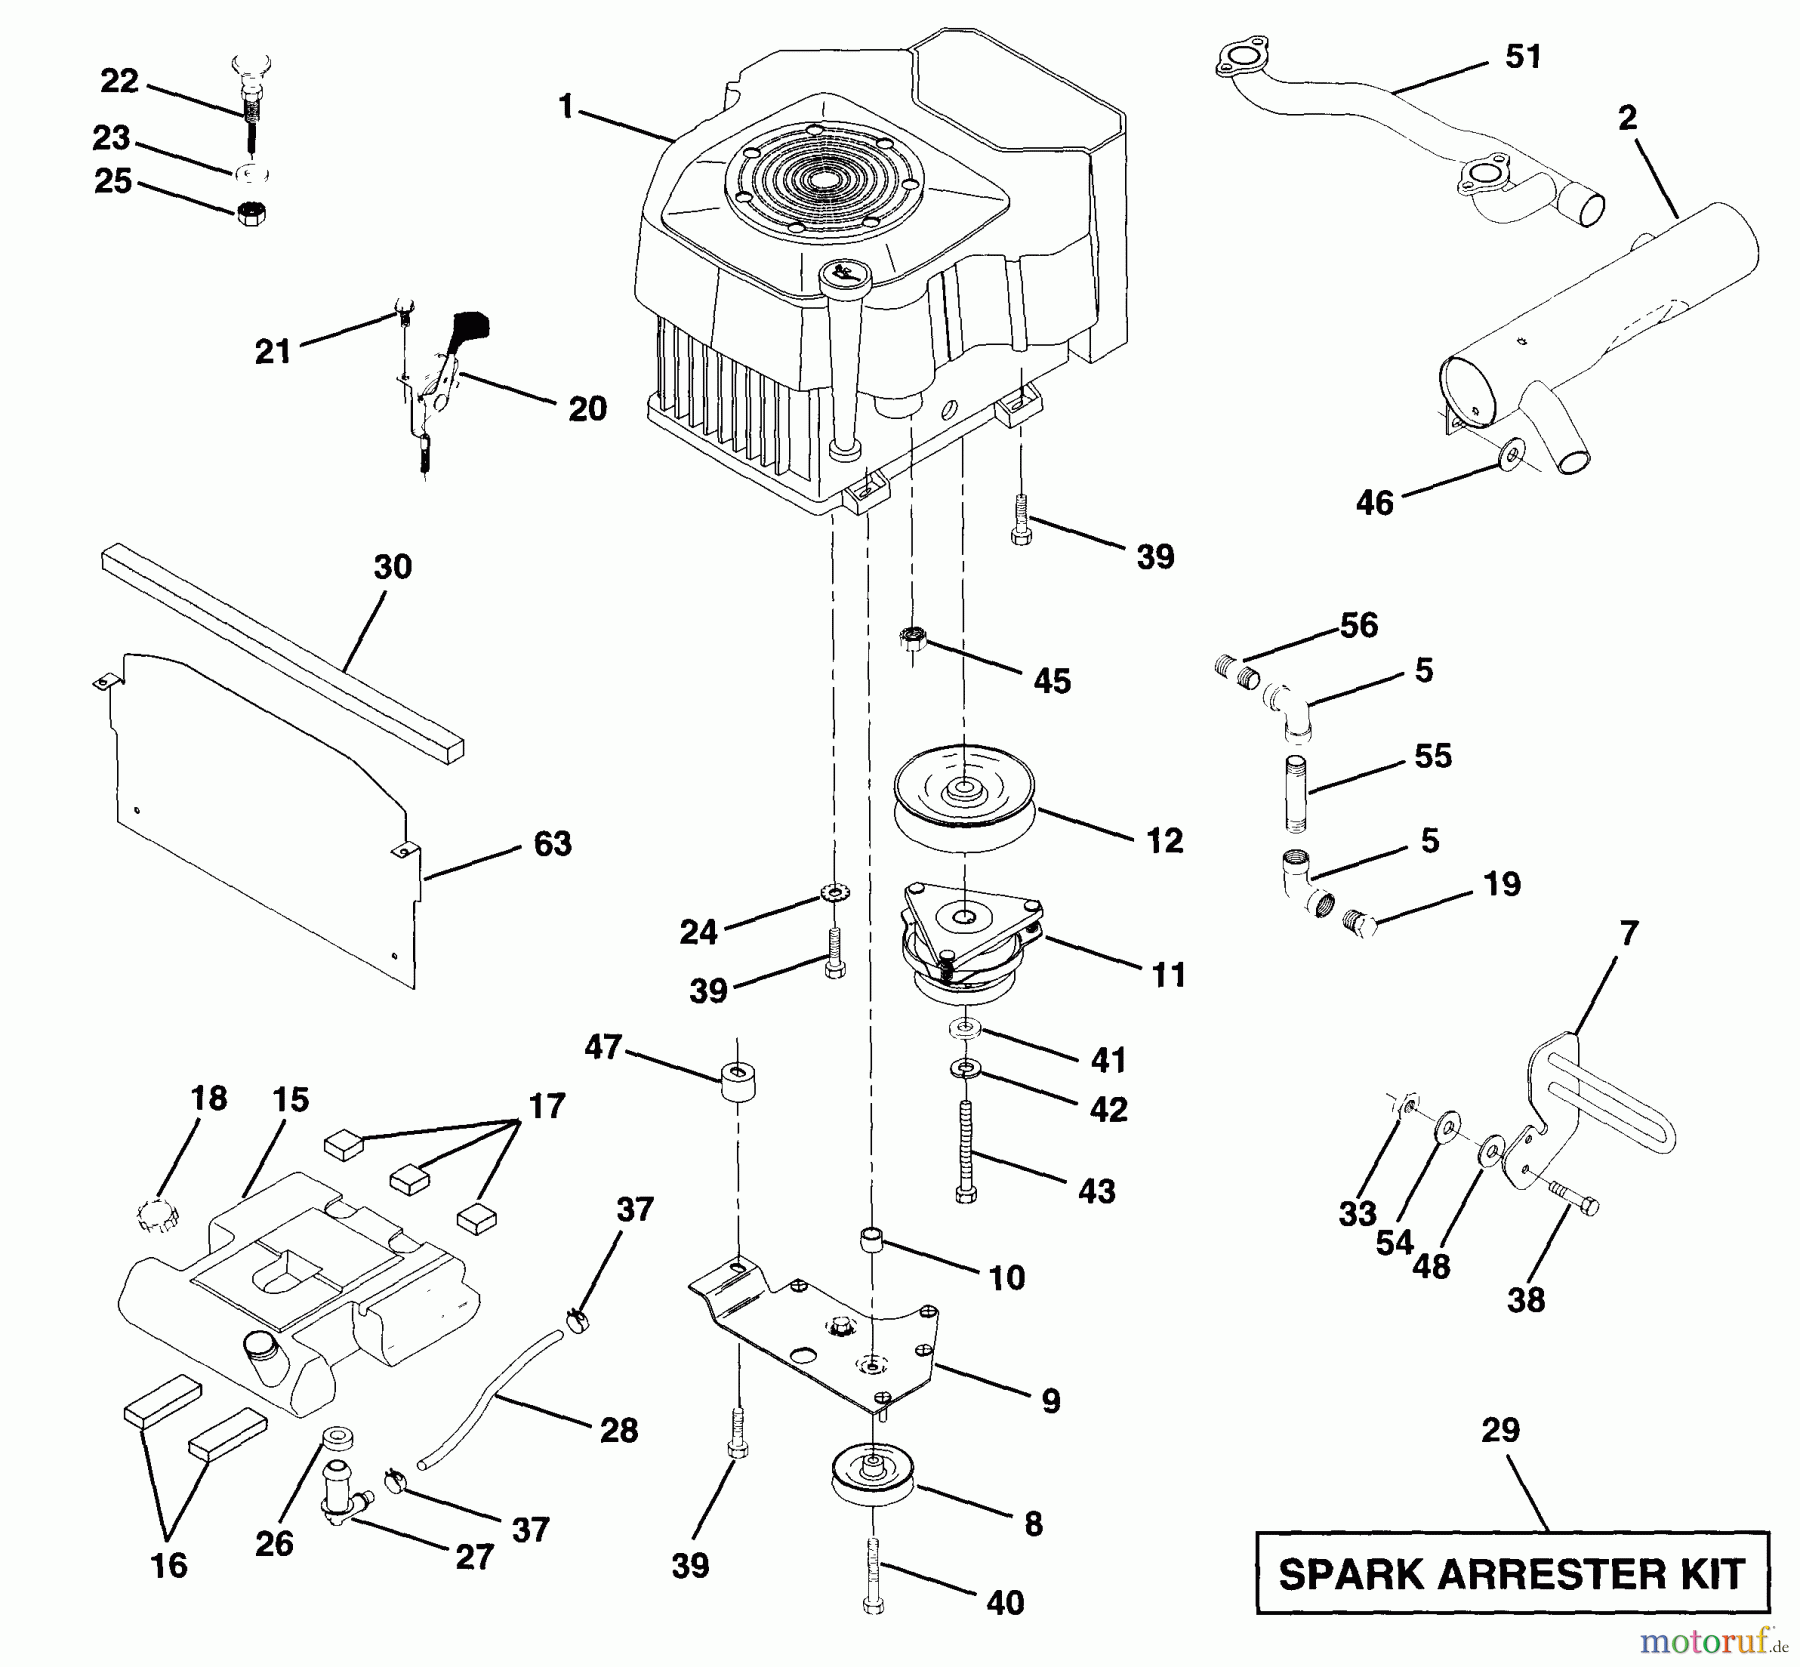  Husqvarna Rasen und Garten Traktoren GT 200 (954140011A) - Husqvarna Garden Tractor (1997-12 & After) Engine